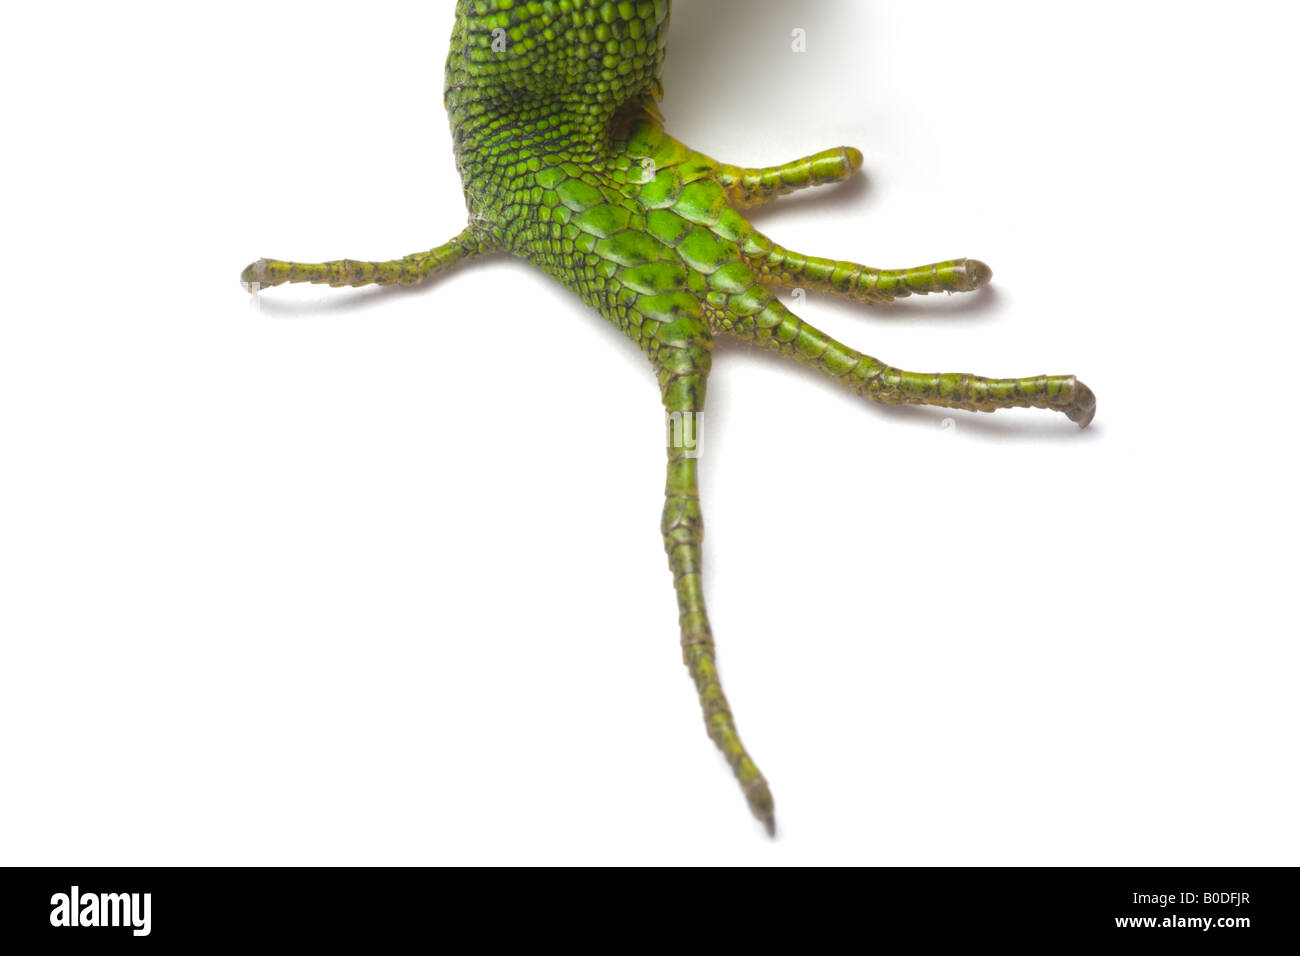 The hindleg of a male green lizard (Lacerta viridis bilineata). Patte arrière d'un lézard vert mâle (Lacerta viridis bilineata). Stock Photo